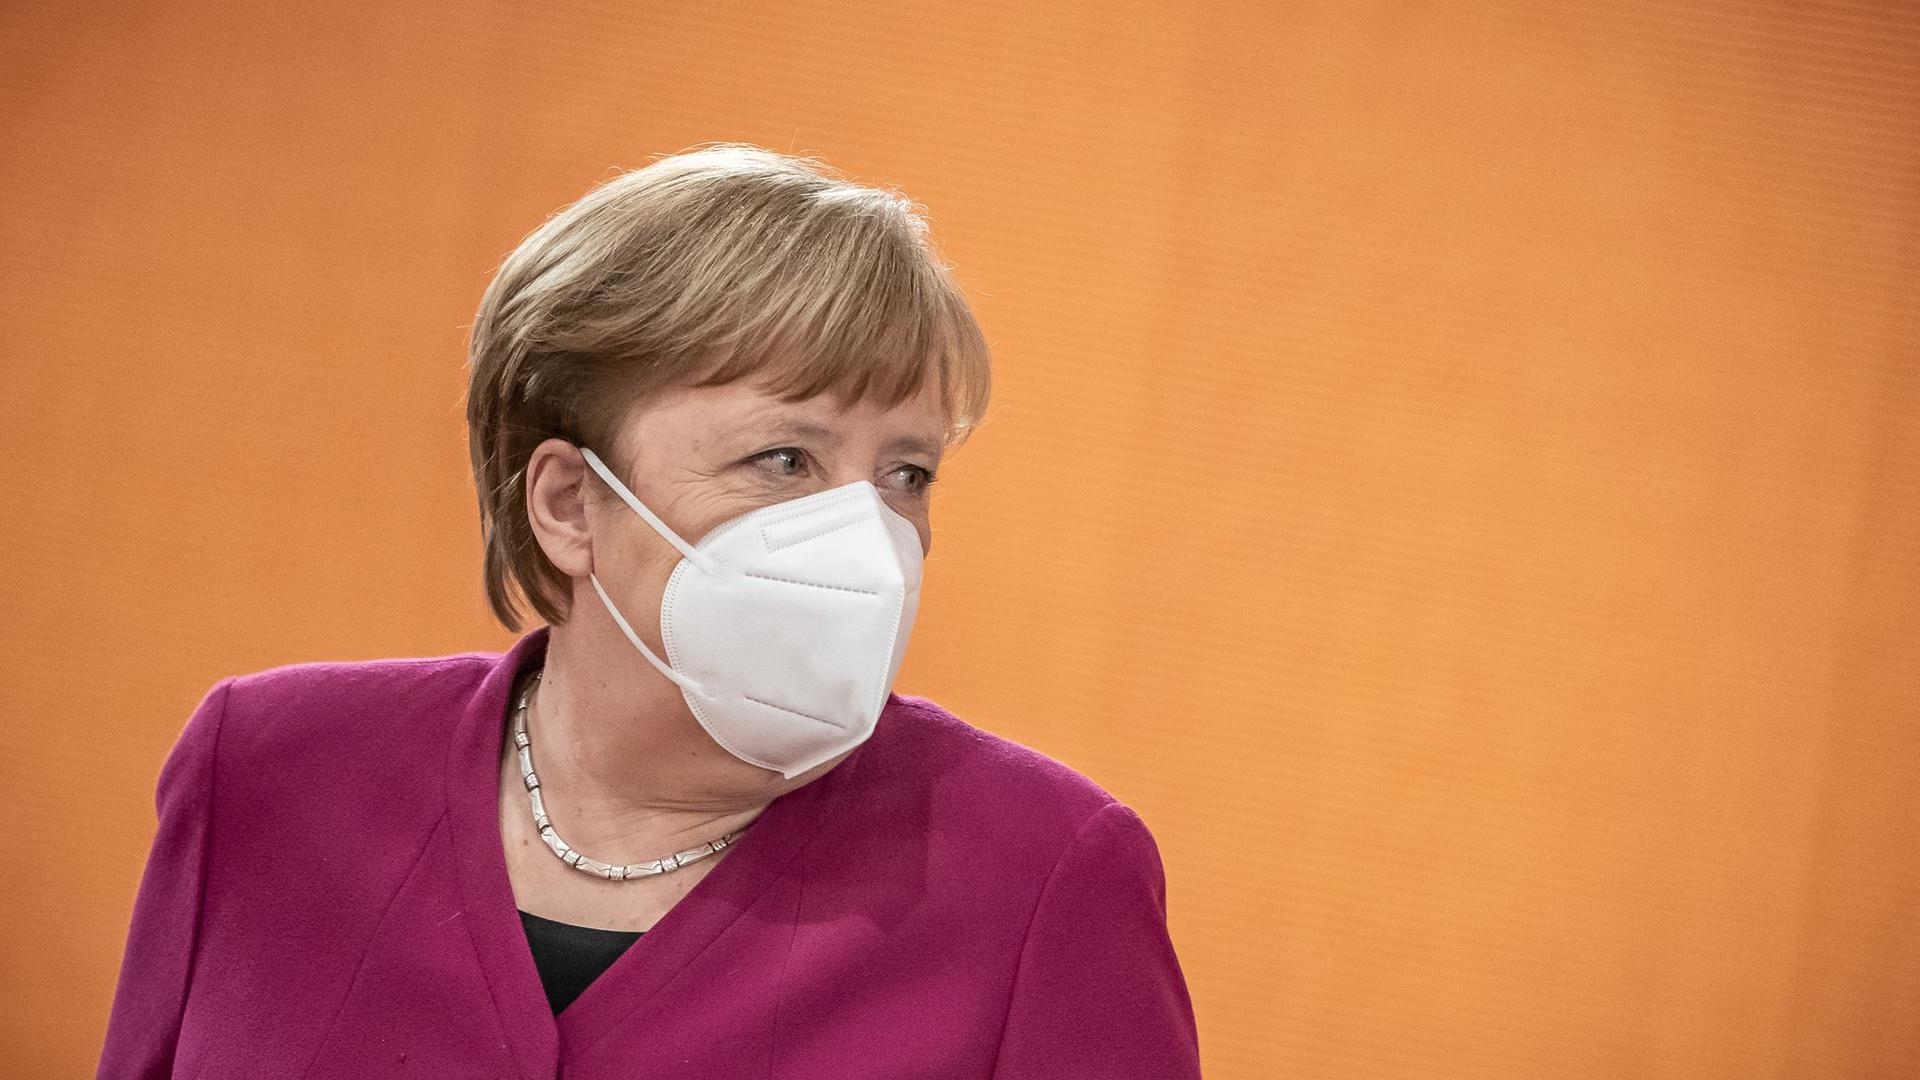 Berät mit Bund und Ländern über mögliche Lockerungen der Corona-Beschränkungen: Bundeskanzlerin Angela Merkel.